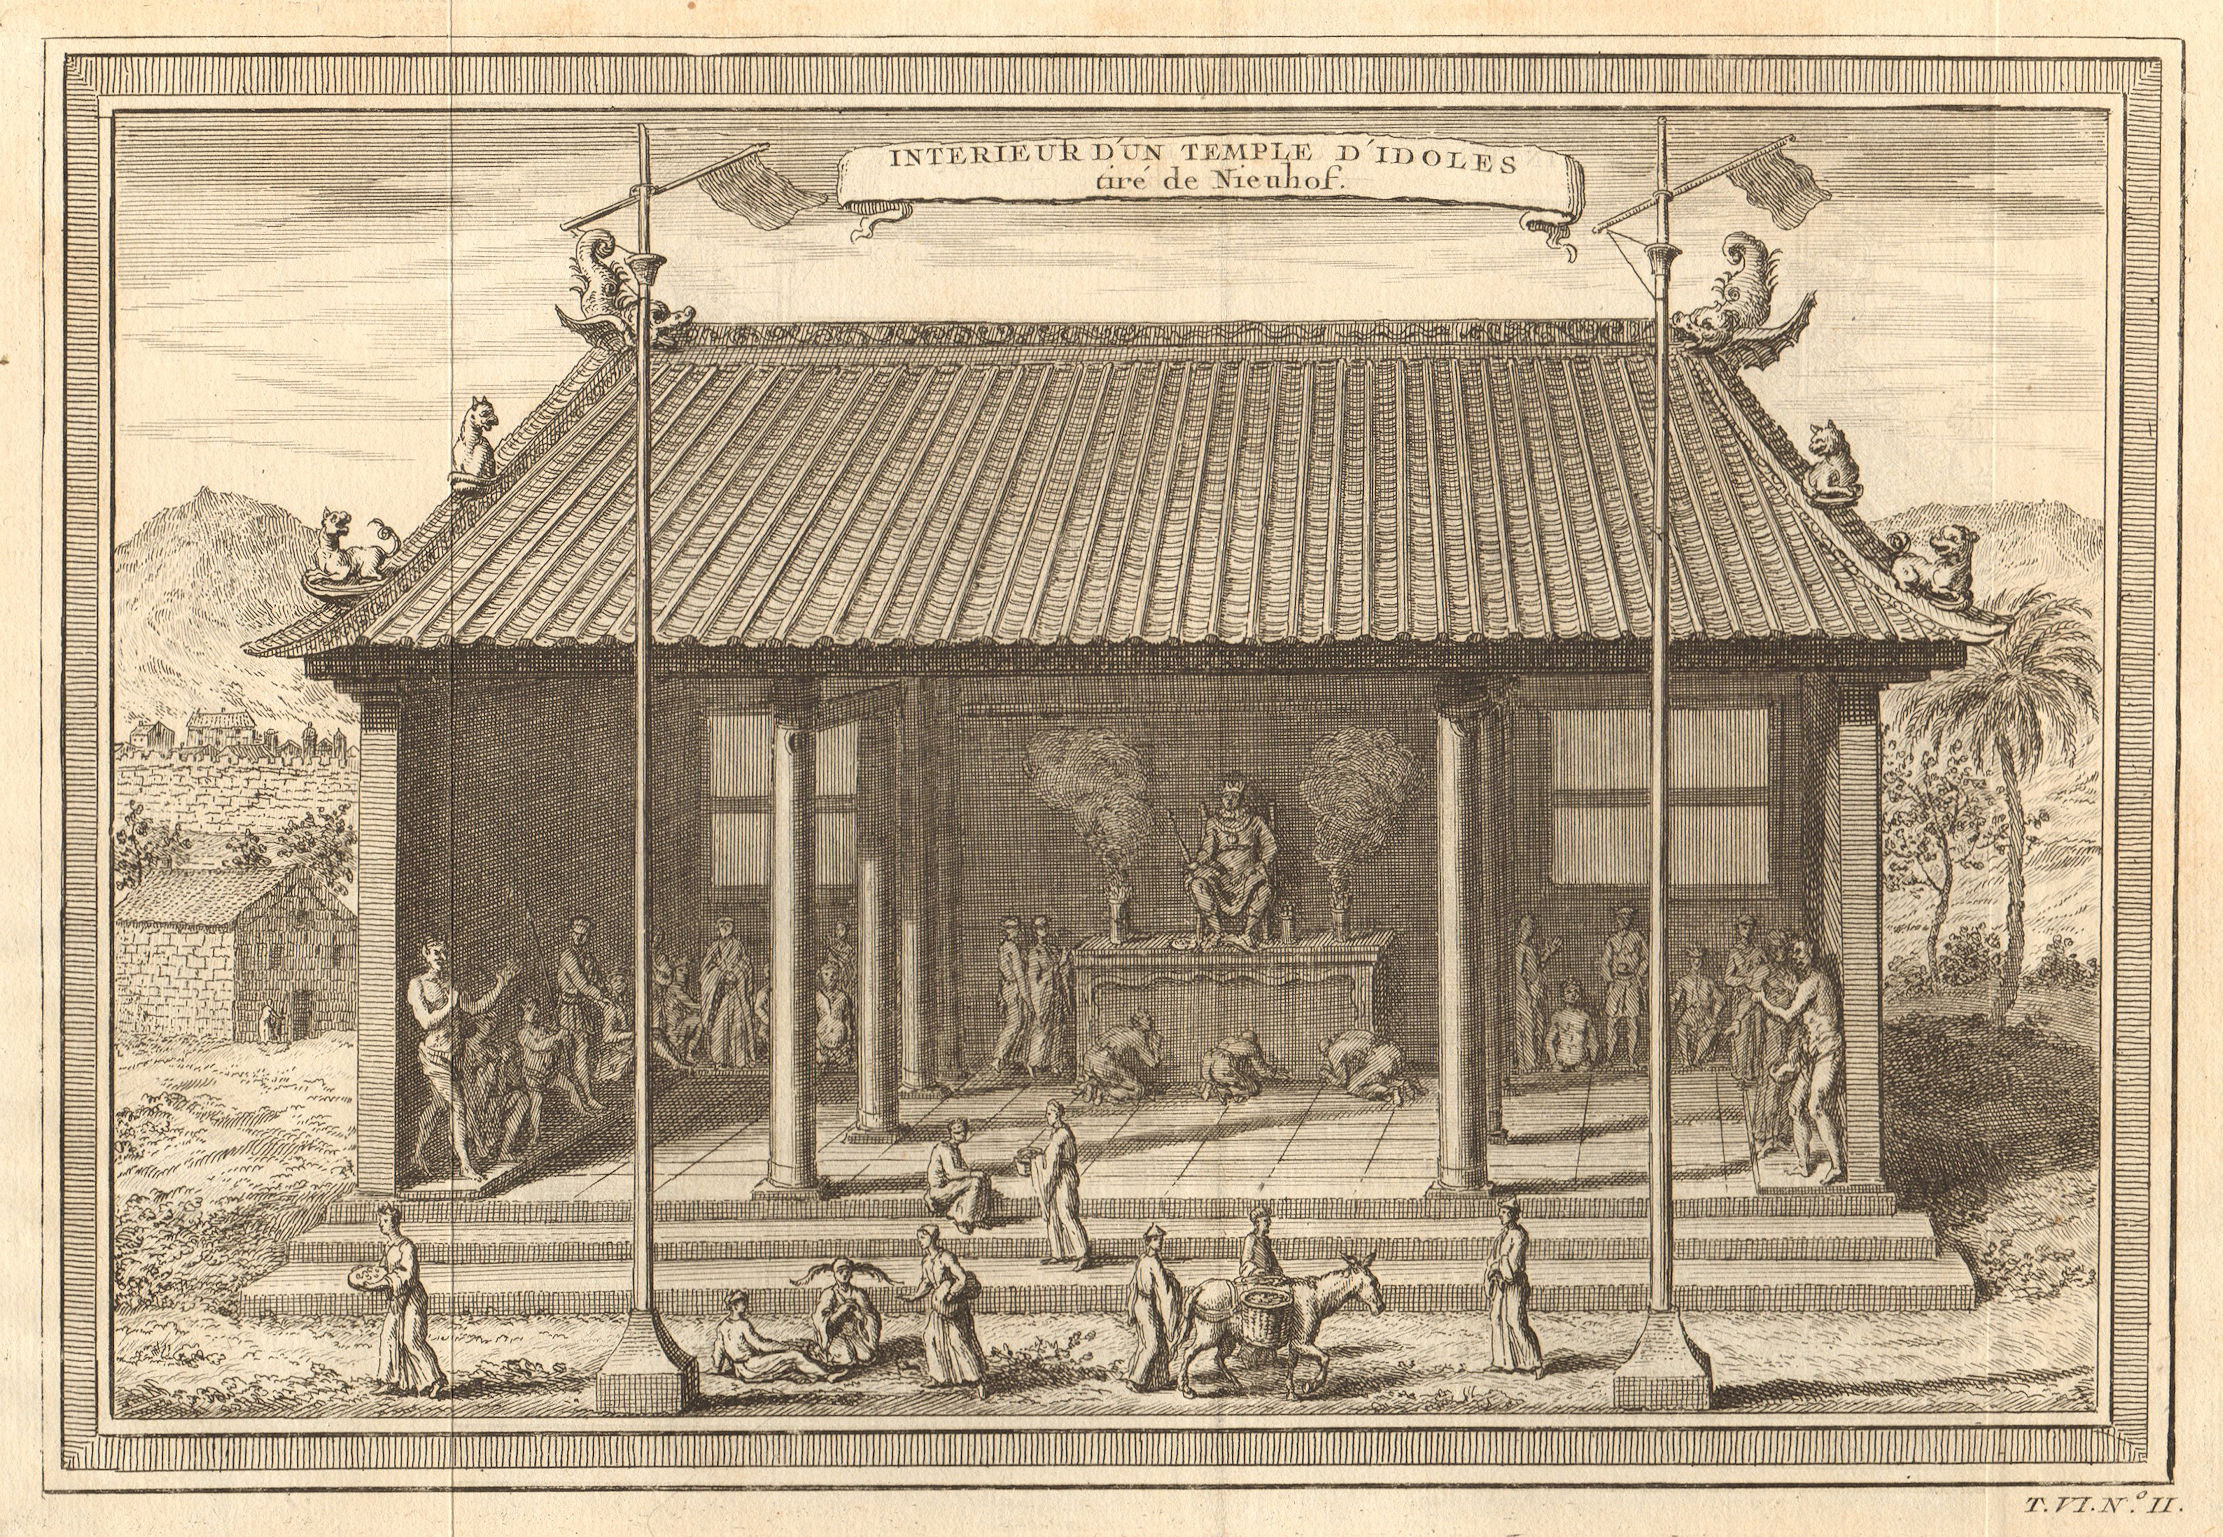 Associate Product 'Interieur d’un Temple d’ldoles'. China. Temple of idols. Confucius 1748 print